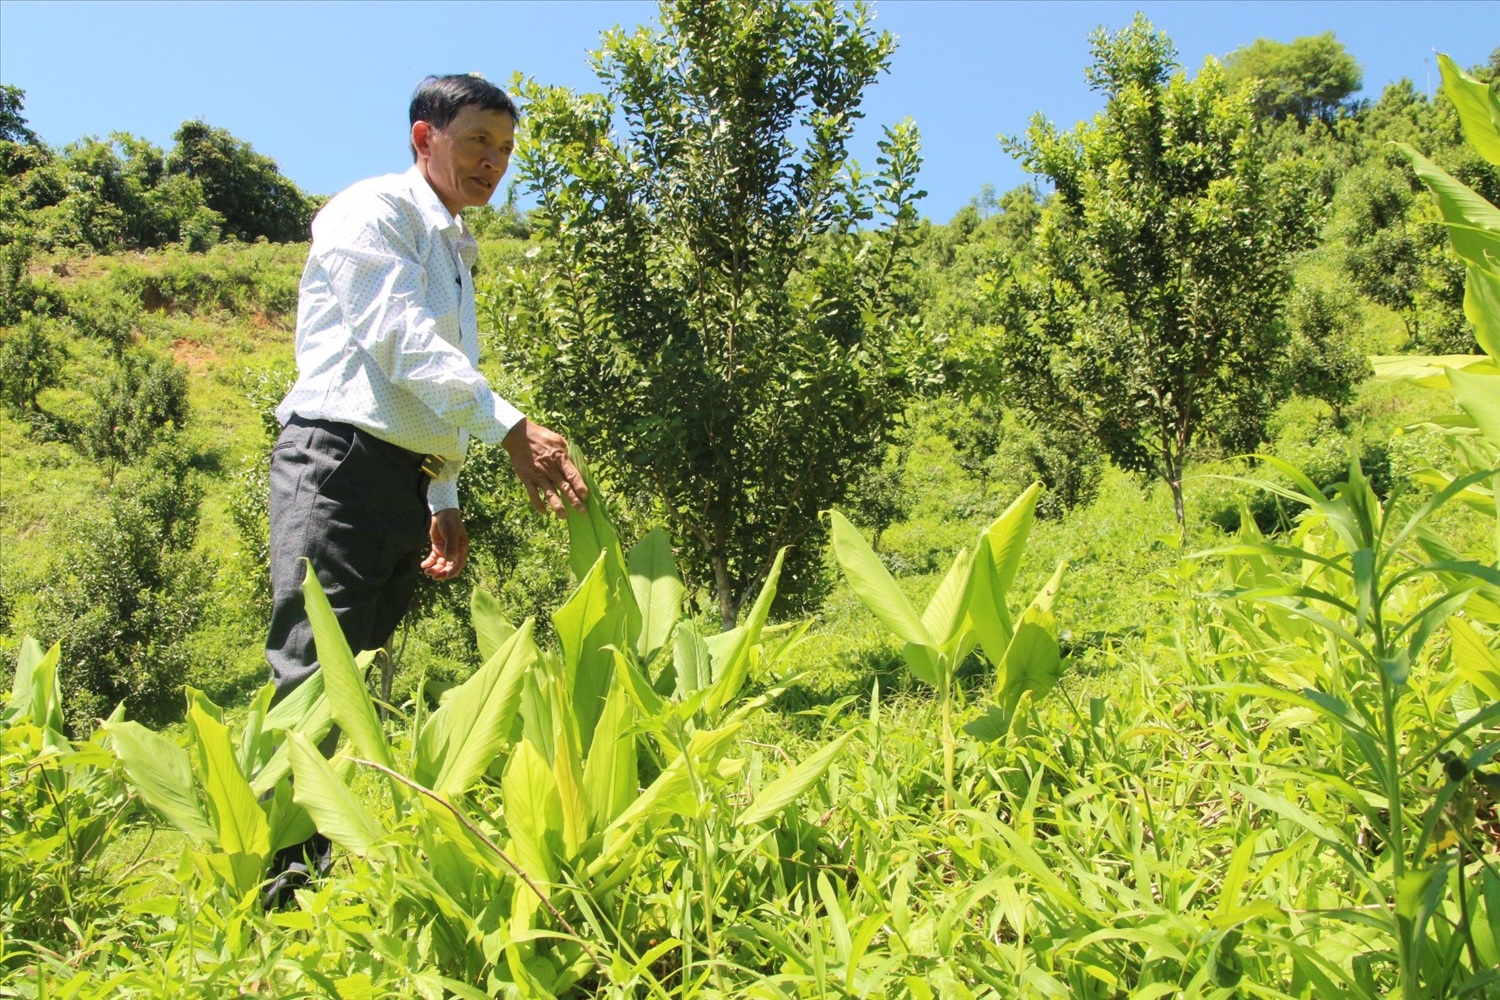 Thực hiện Nghị quyết “Tam nông”, tỉnh Quảng Ngãi đề ra mục tiêu đến năm 2025, tốc độ tăng trưởng ngành nông nghiệp của tỉnh đạt bình quân 4 - 5%/năm. (Trong ảnh: Trồng mắc ca ở miền núi Quảng Ngãi)